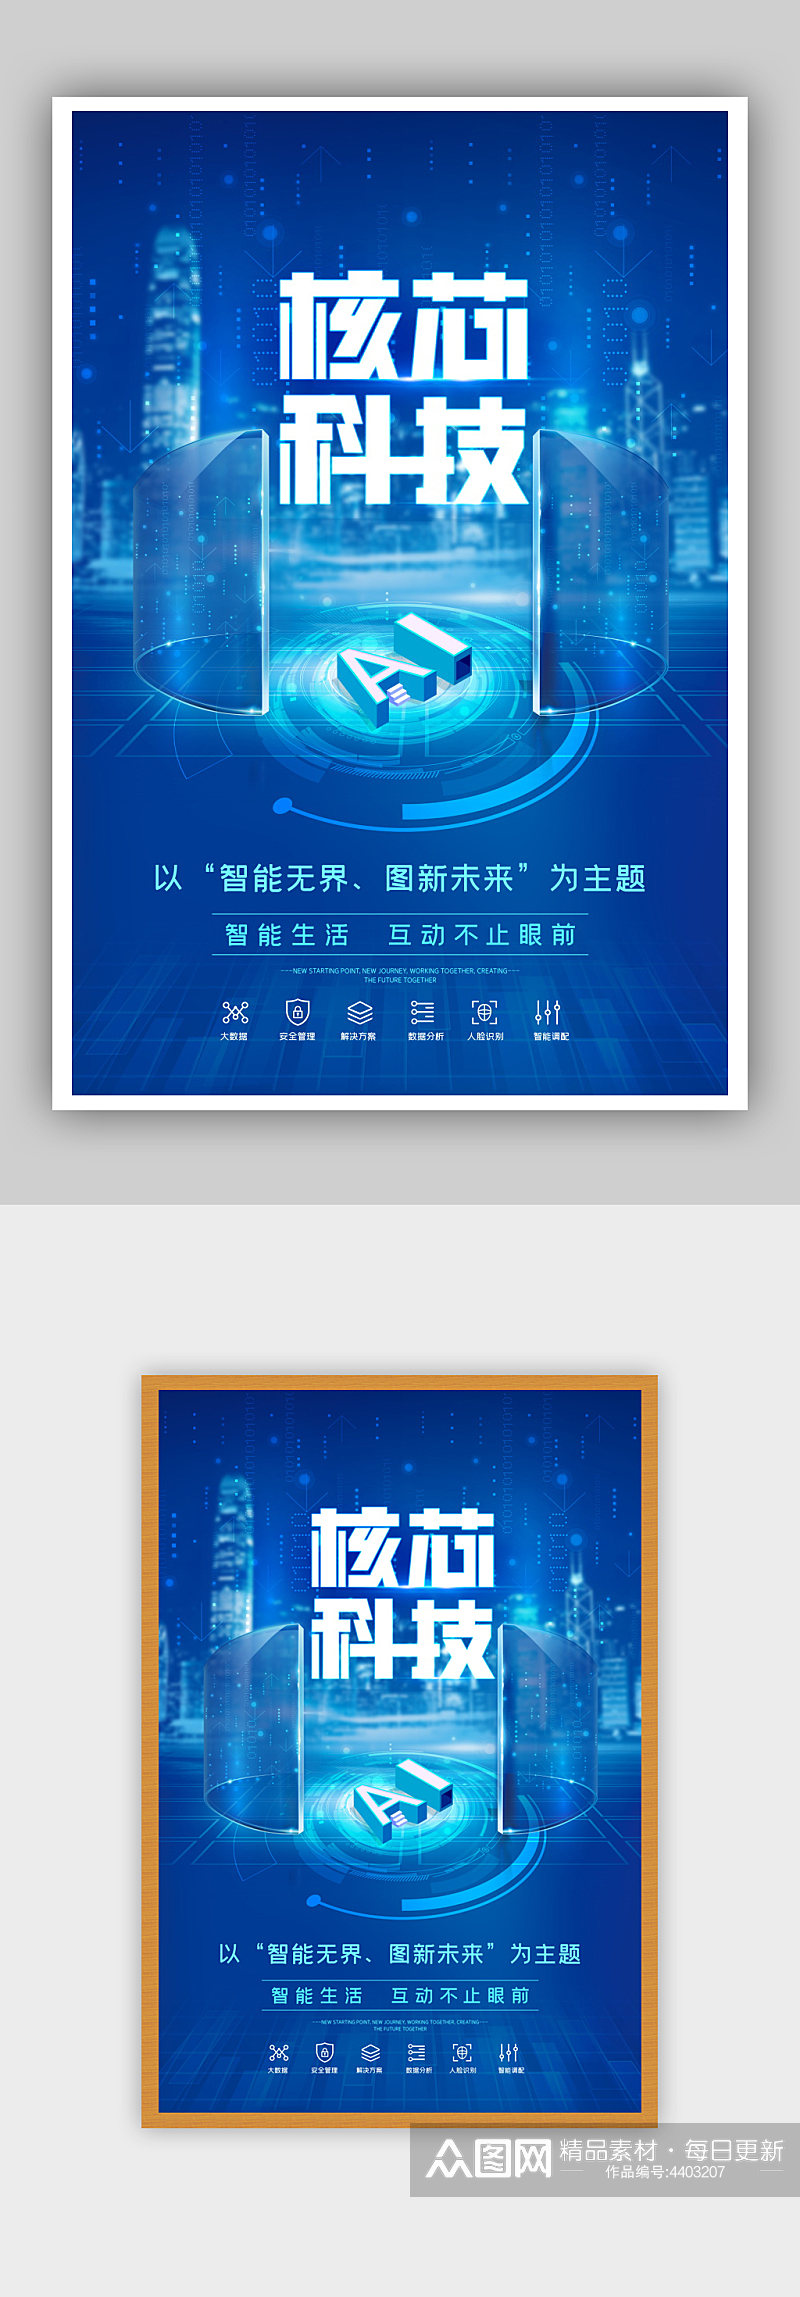 蓝色时尚科技人工智能AI科技宣传海报素材